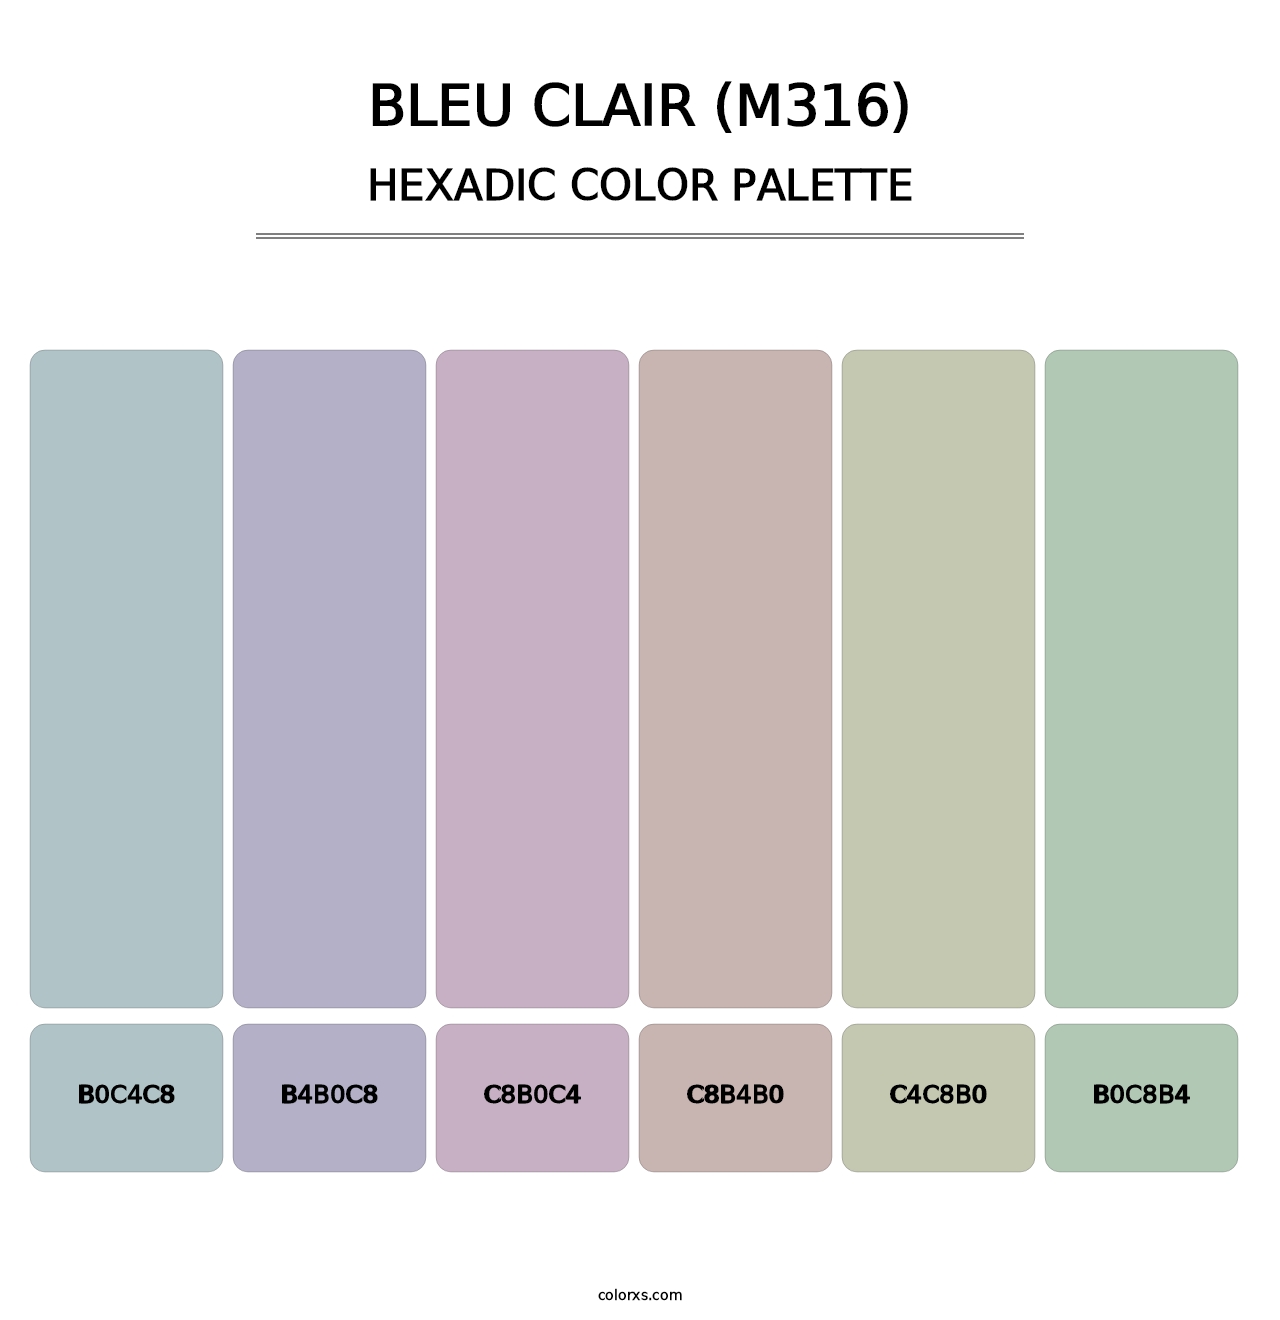 Bleu Clair (M316) - Hexadic Color Palette